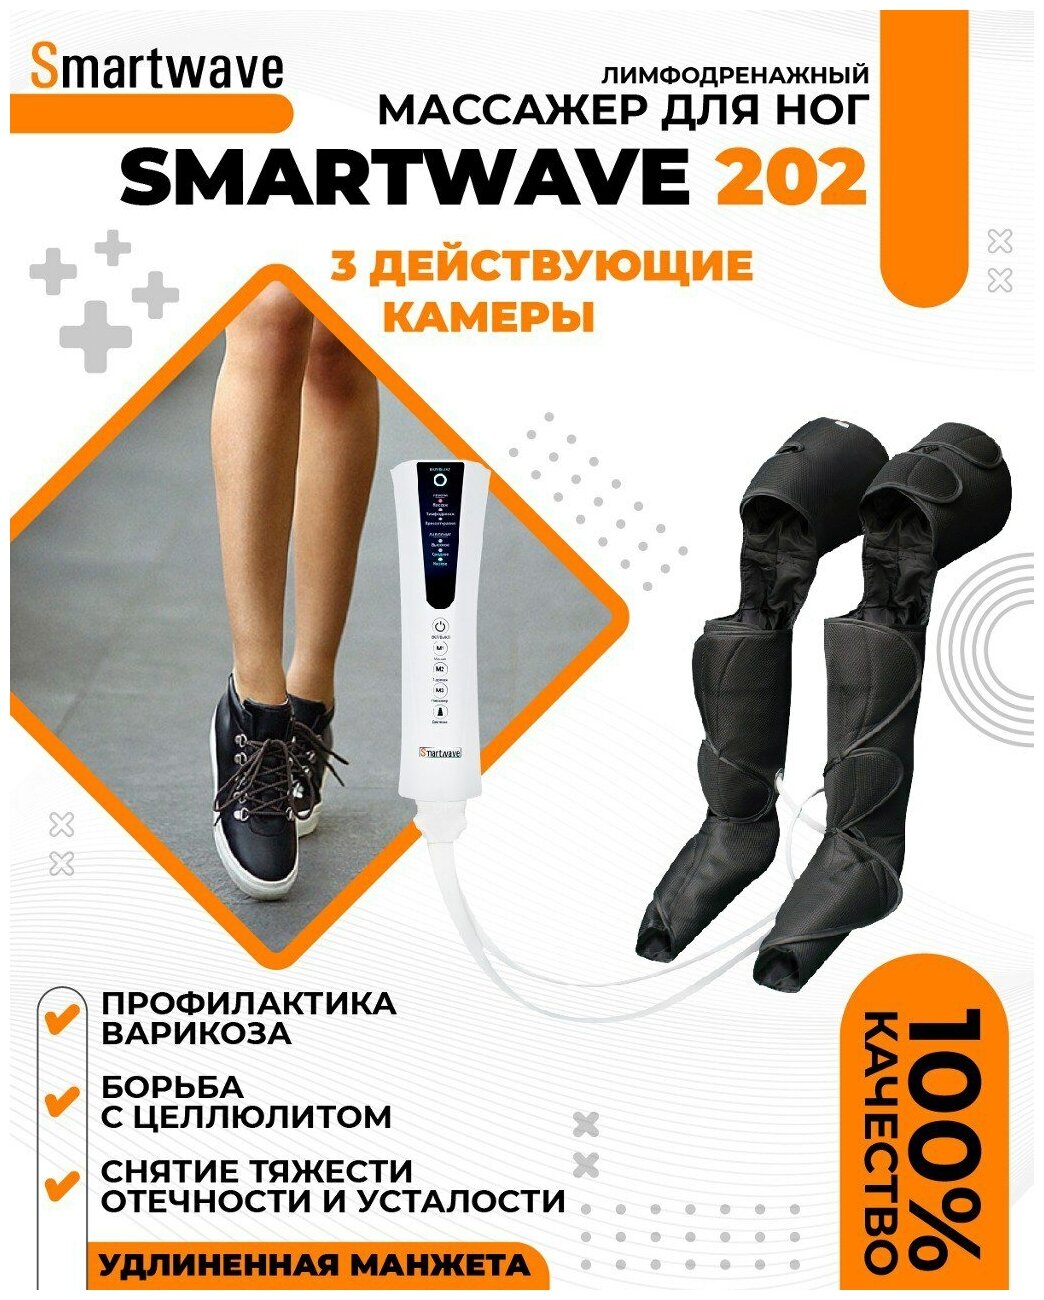 Smartwave 202 - Аппарат прессотерапии и лимфодренажа для домашнего использования с тремя камерами давления